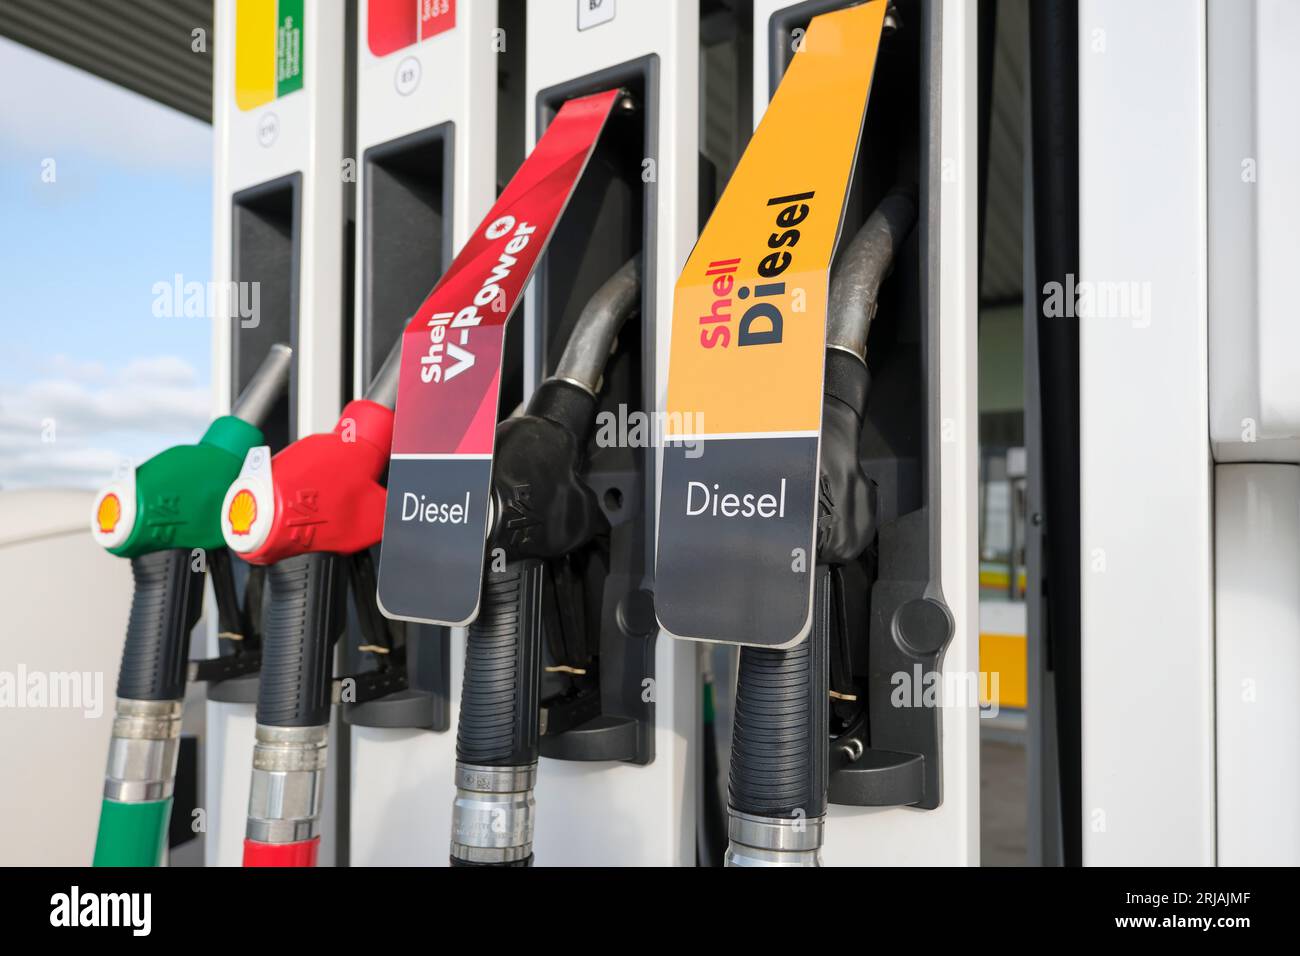 Buses de pompe à gaz Shell dans une station-service. Fermer les injecteurs de carburant pour différents types d'essence et de diesel dans une station-service. Banque D'Images